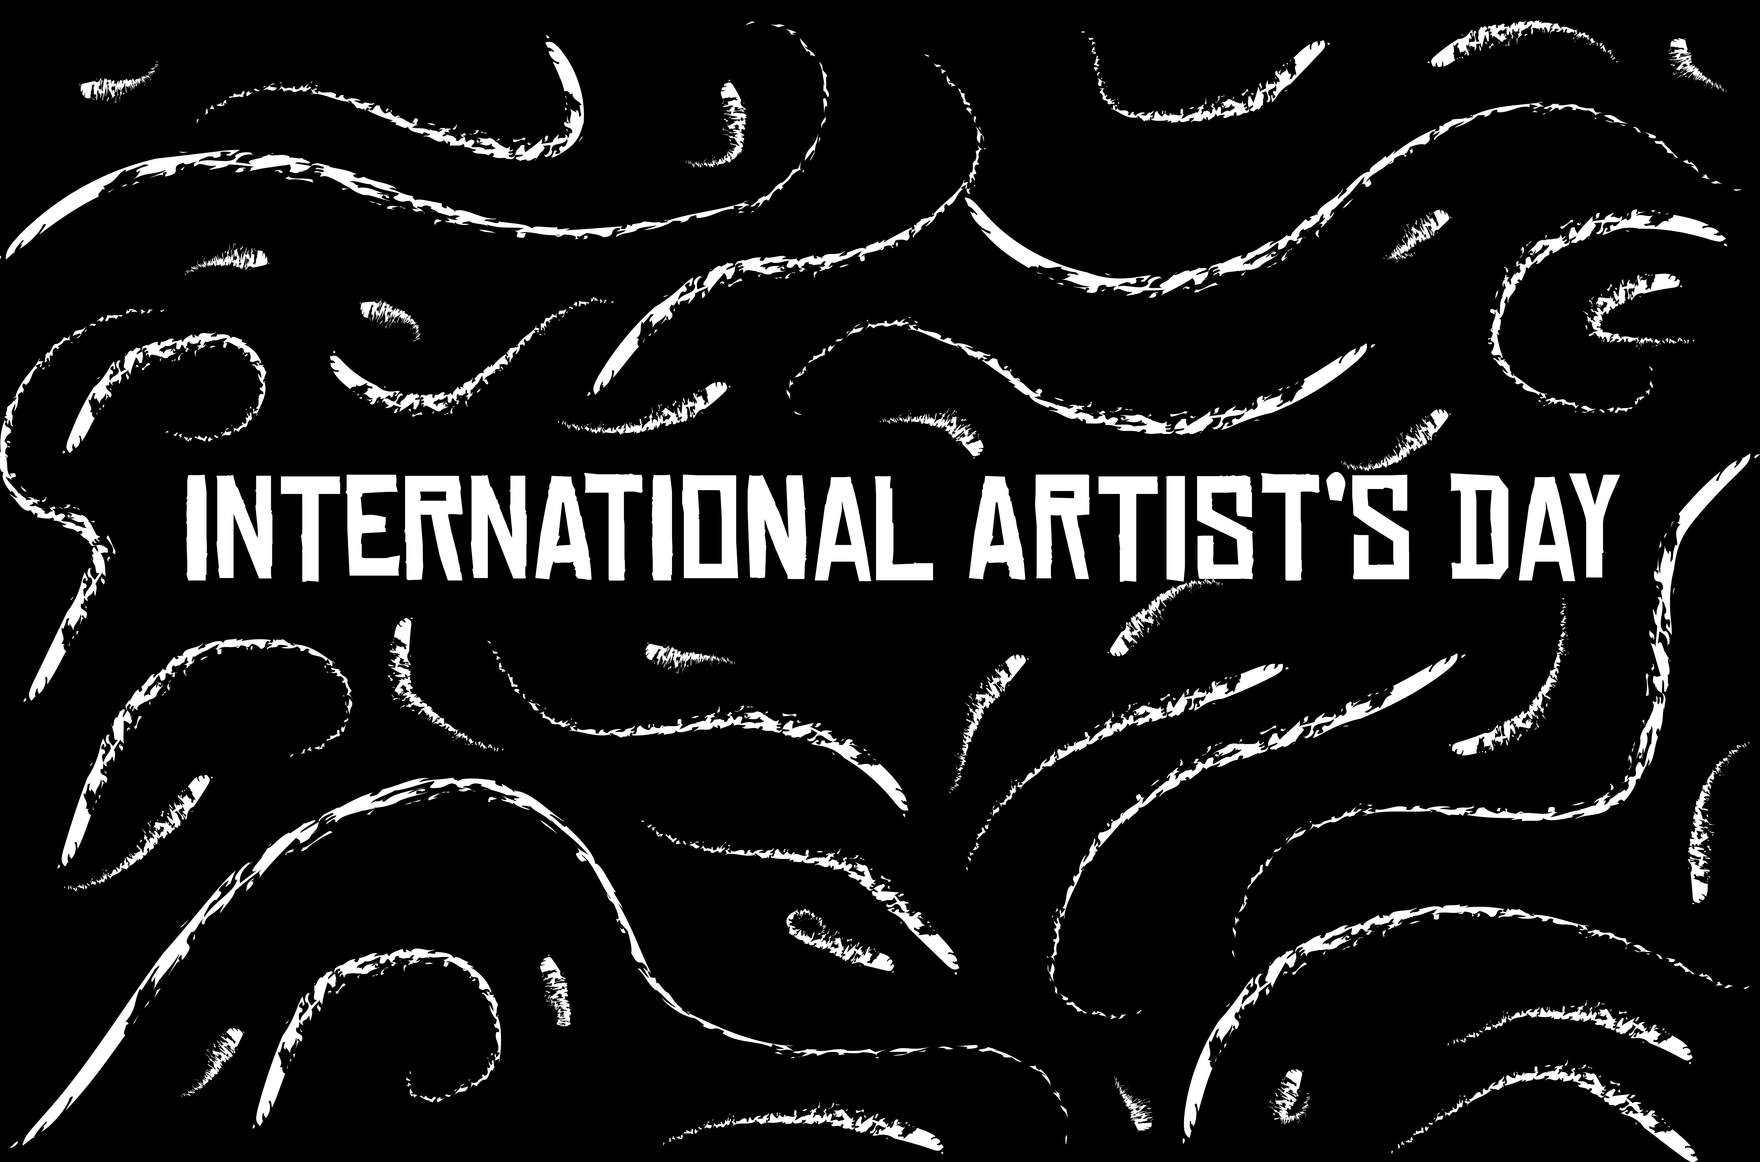 International Artist’s Day Banner in Illustrator, PSD, EPS, SVG, JPG, PNG